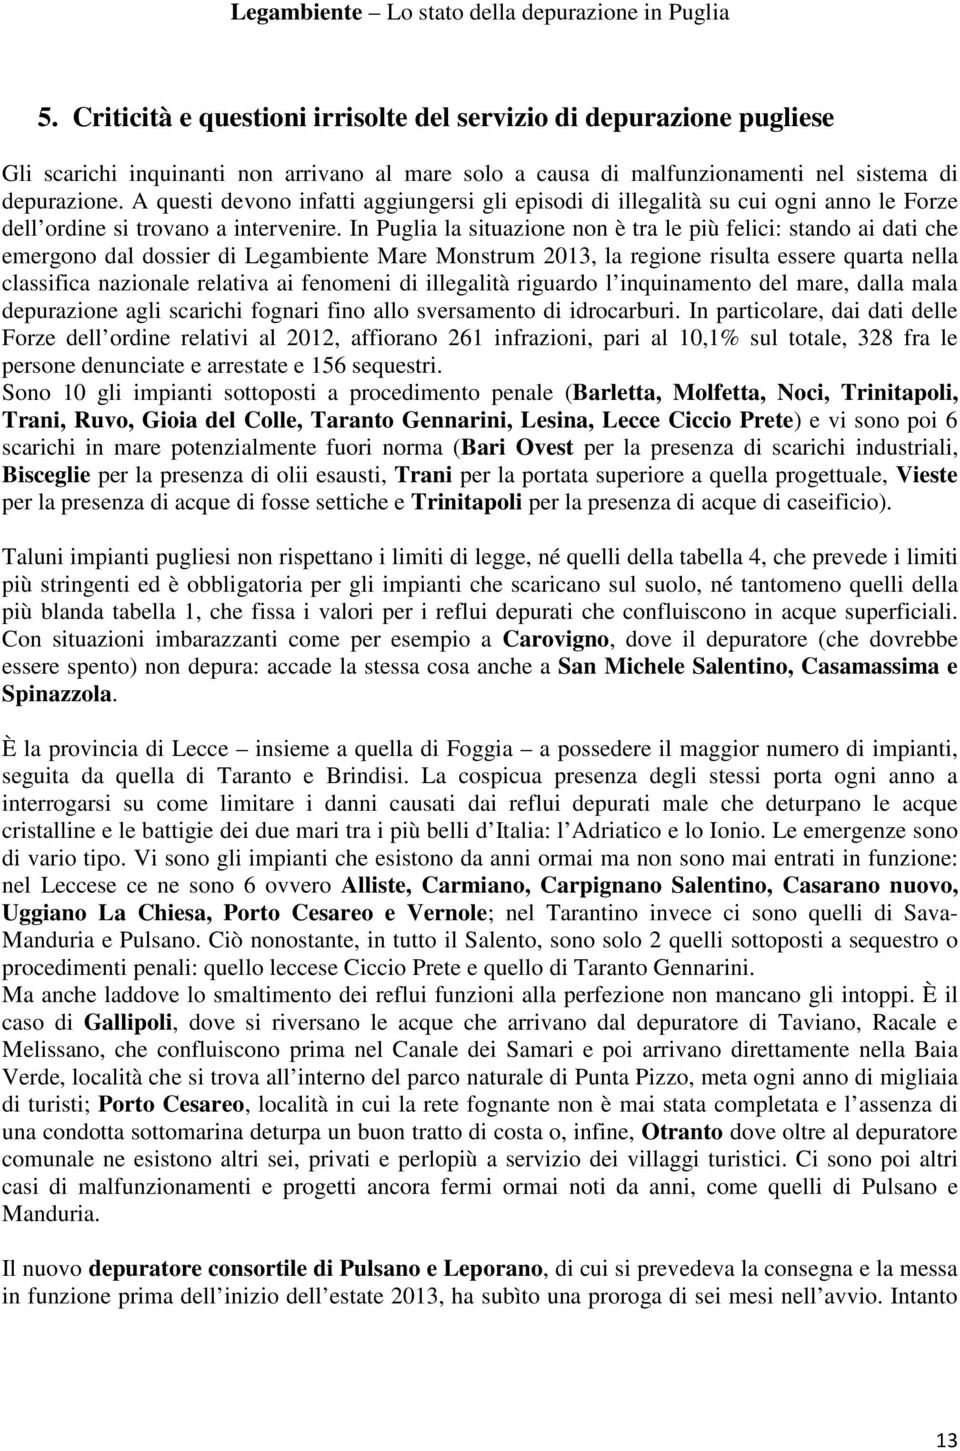 In Puglia la situazione non è tra le più felici: stando ai dati che emergono dal dossier di Legambiente Mare Monstrum 2013, la regione risulta essere quarta nella classifica nazionale relativa ai